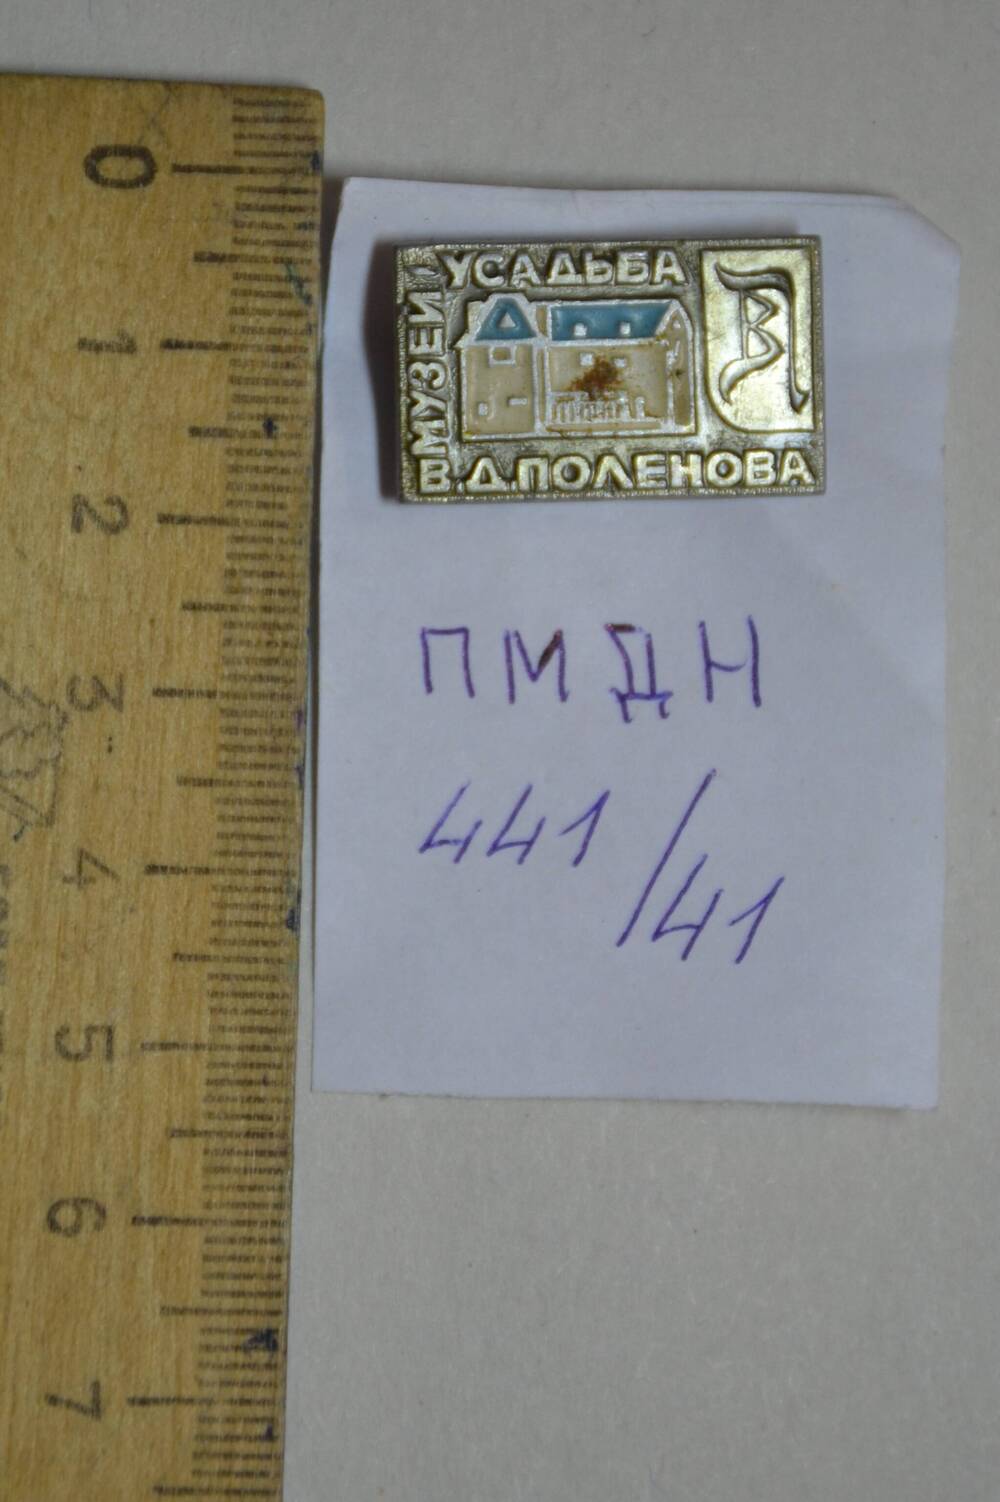 Значок «Музей-усадьба В.Д.Поленова».